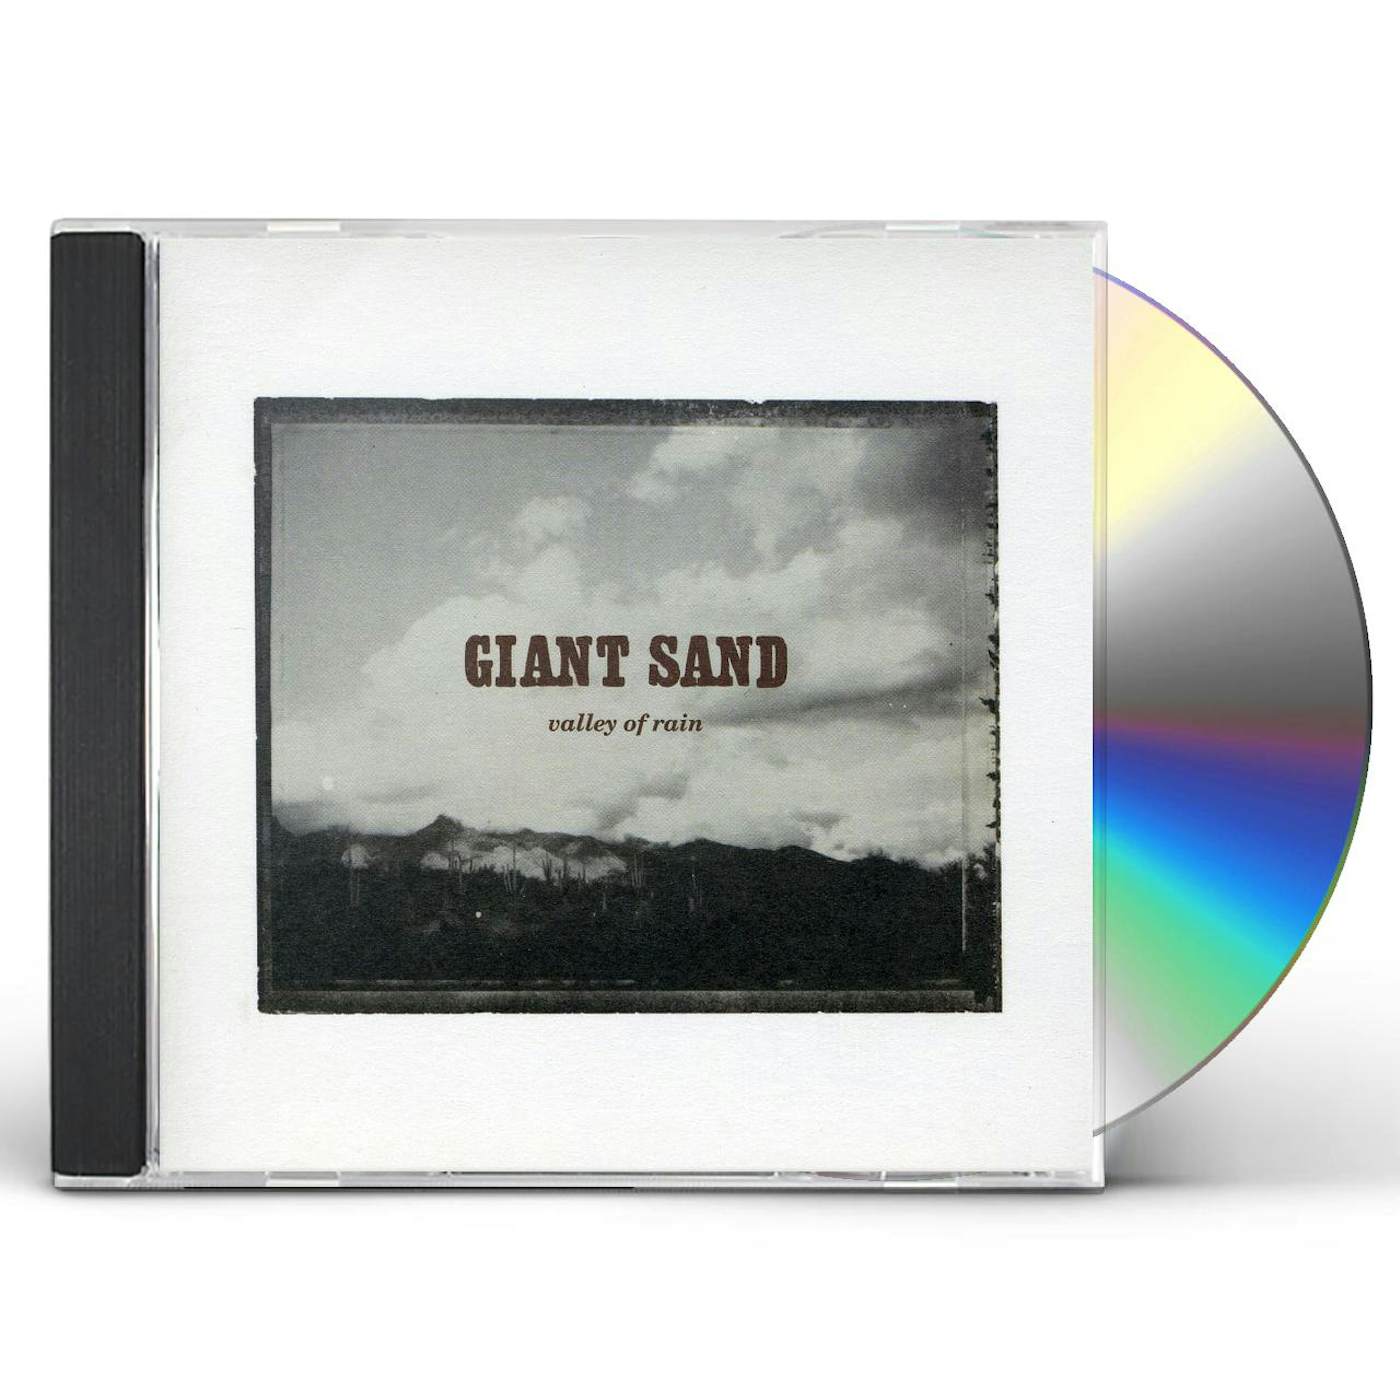 Giant Sand VALLEY OF RAIN CD